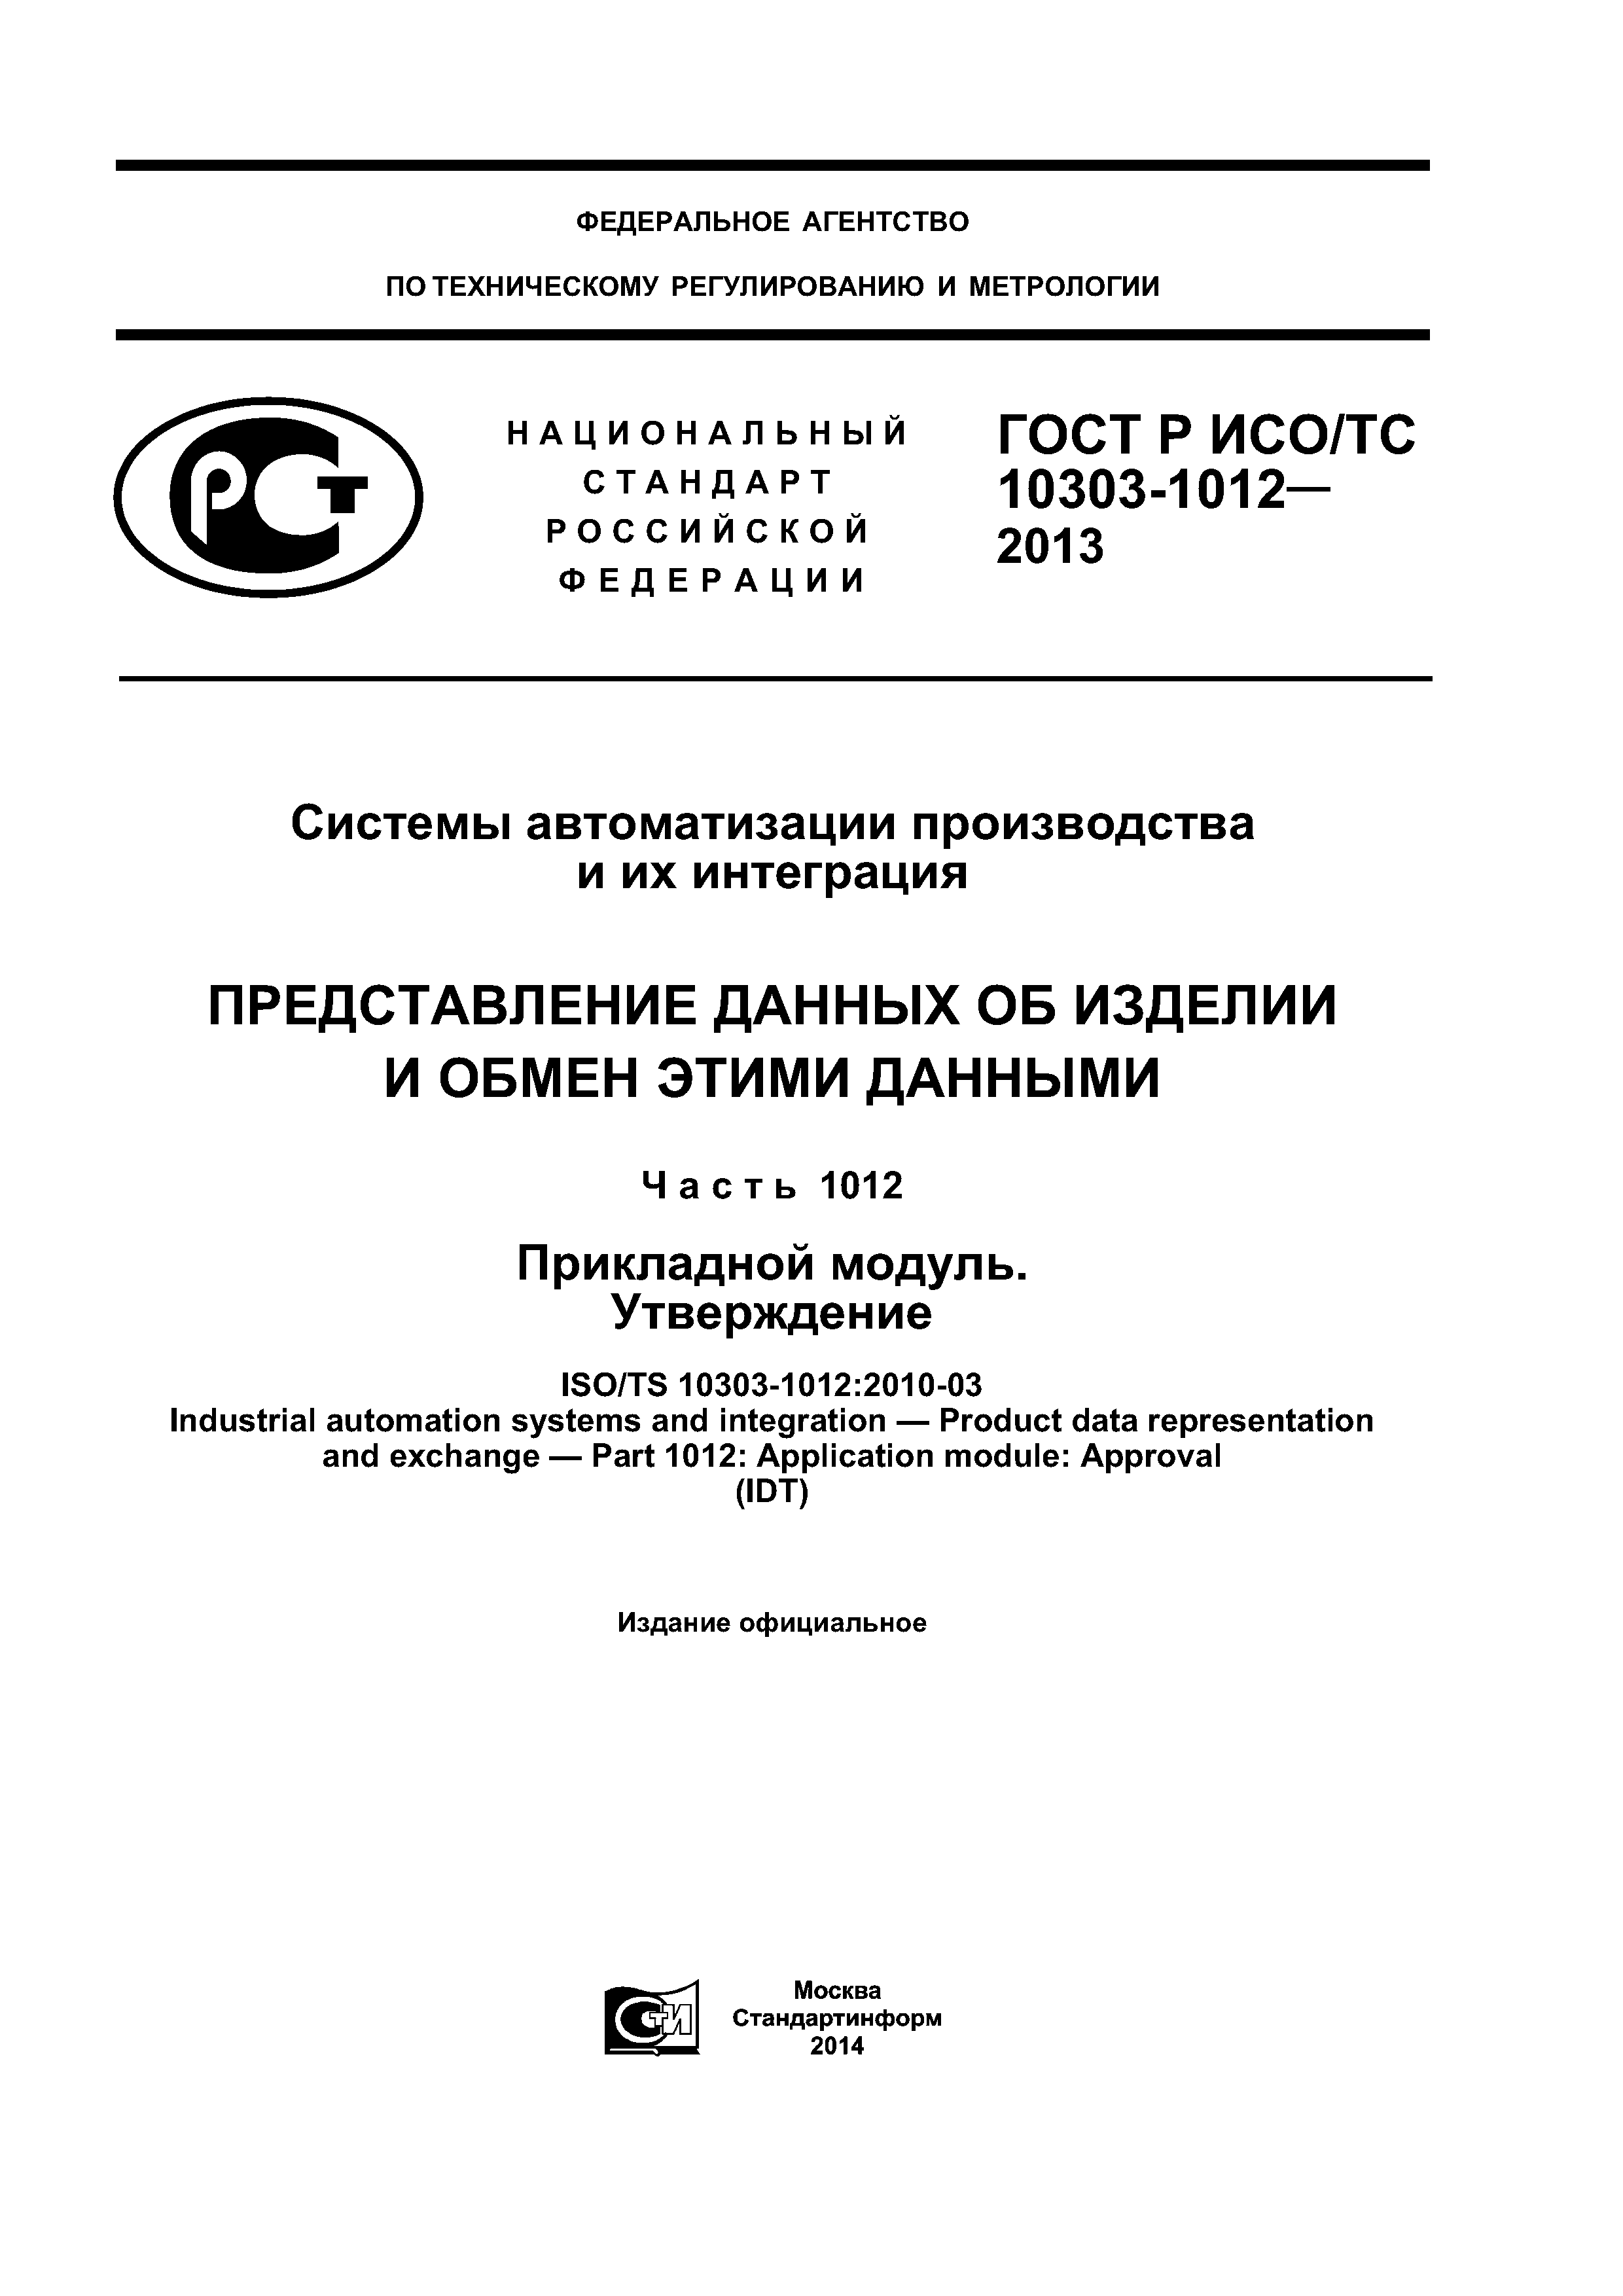 ГОСТ Р ИСО/ТС 10303-1012-2013